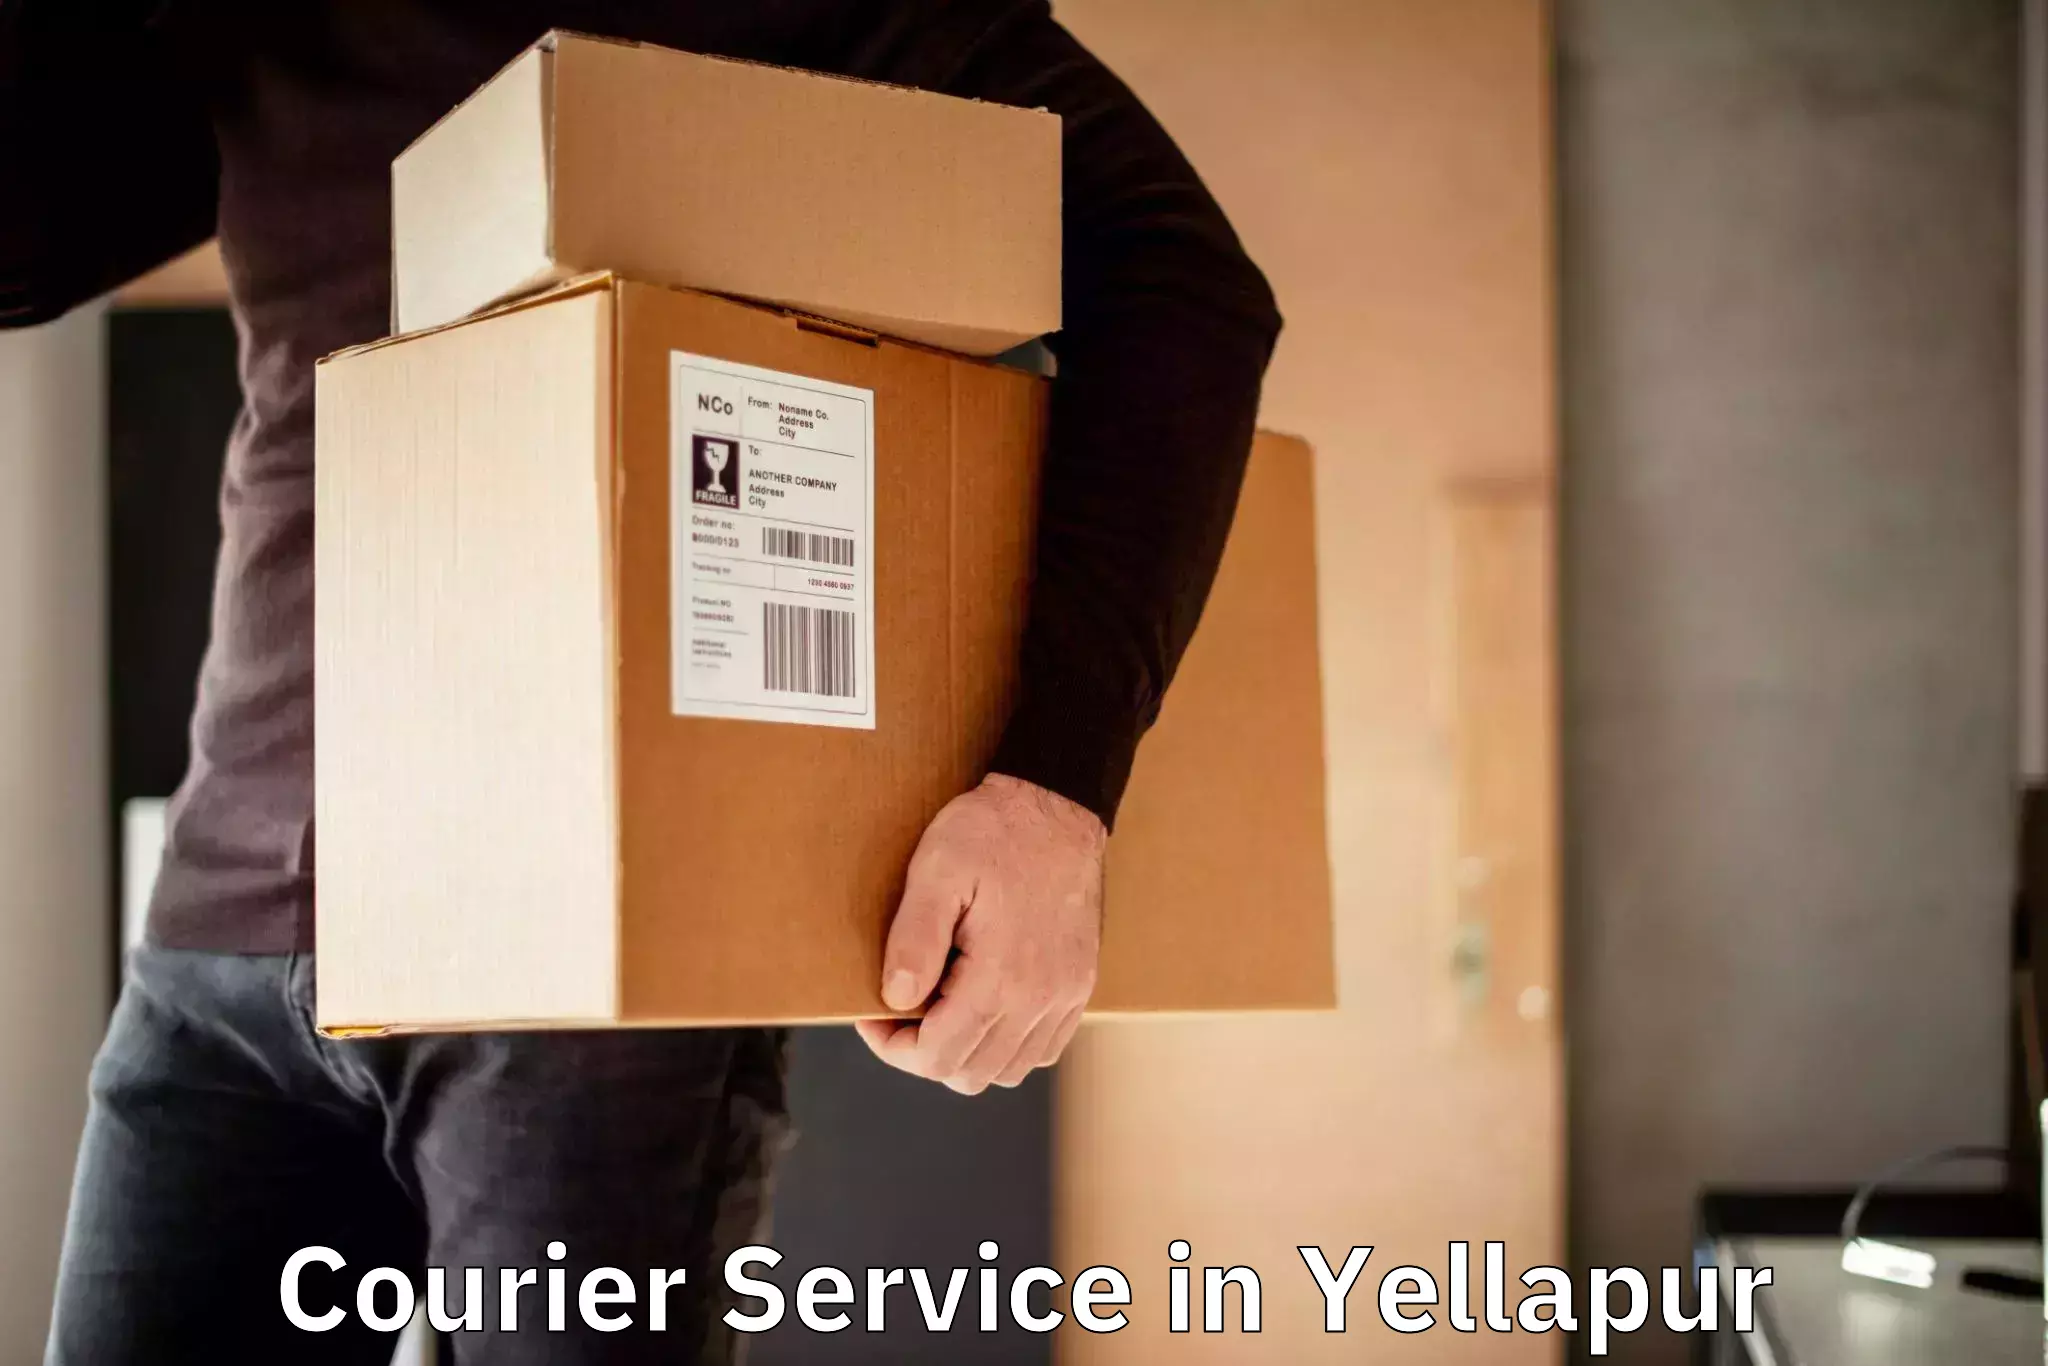 Premium courier solutions in Yellapur